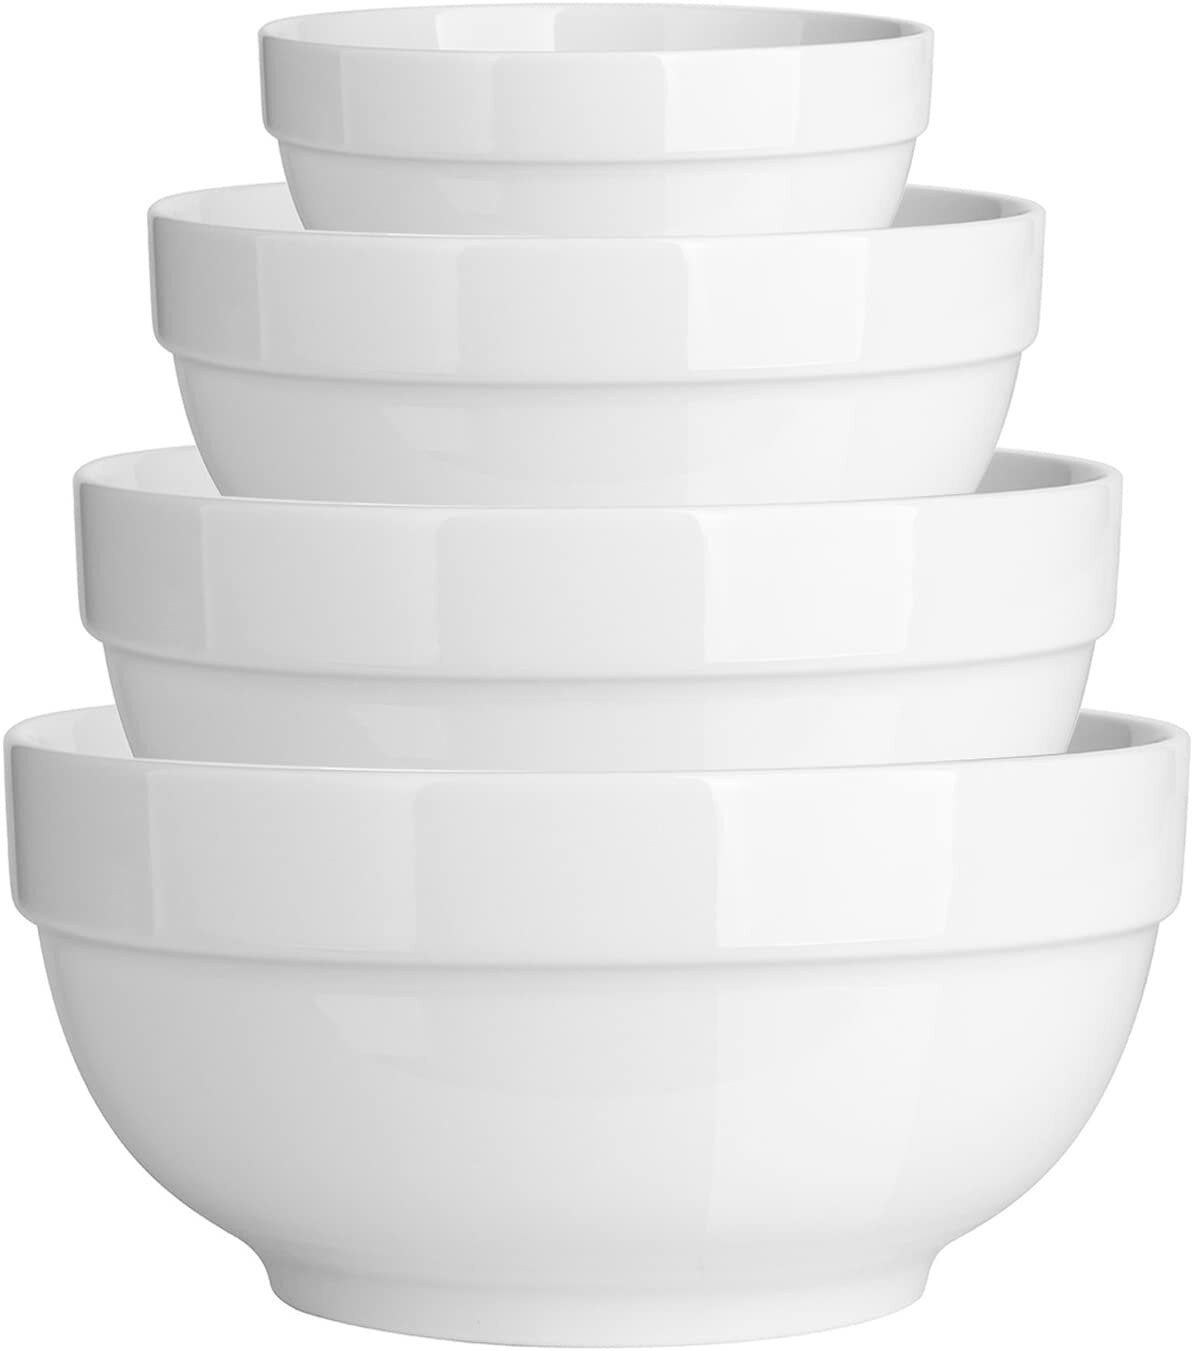 Porcelain Serving Bowls 